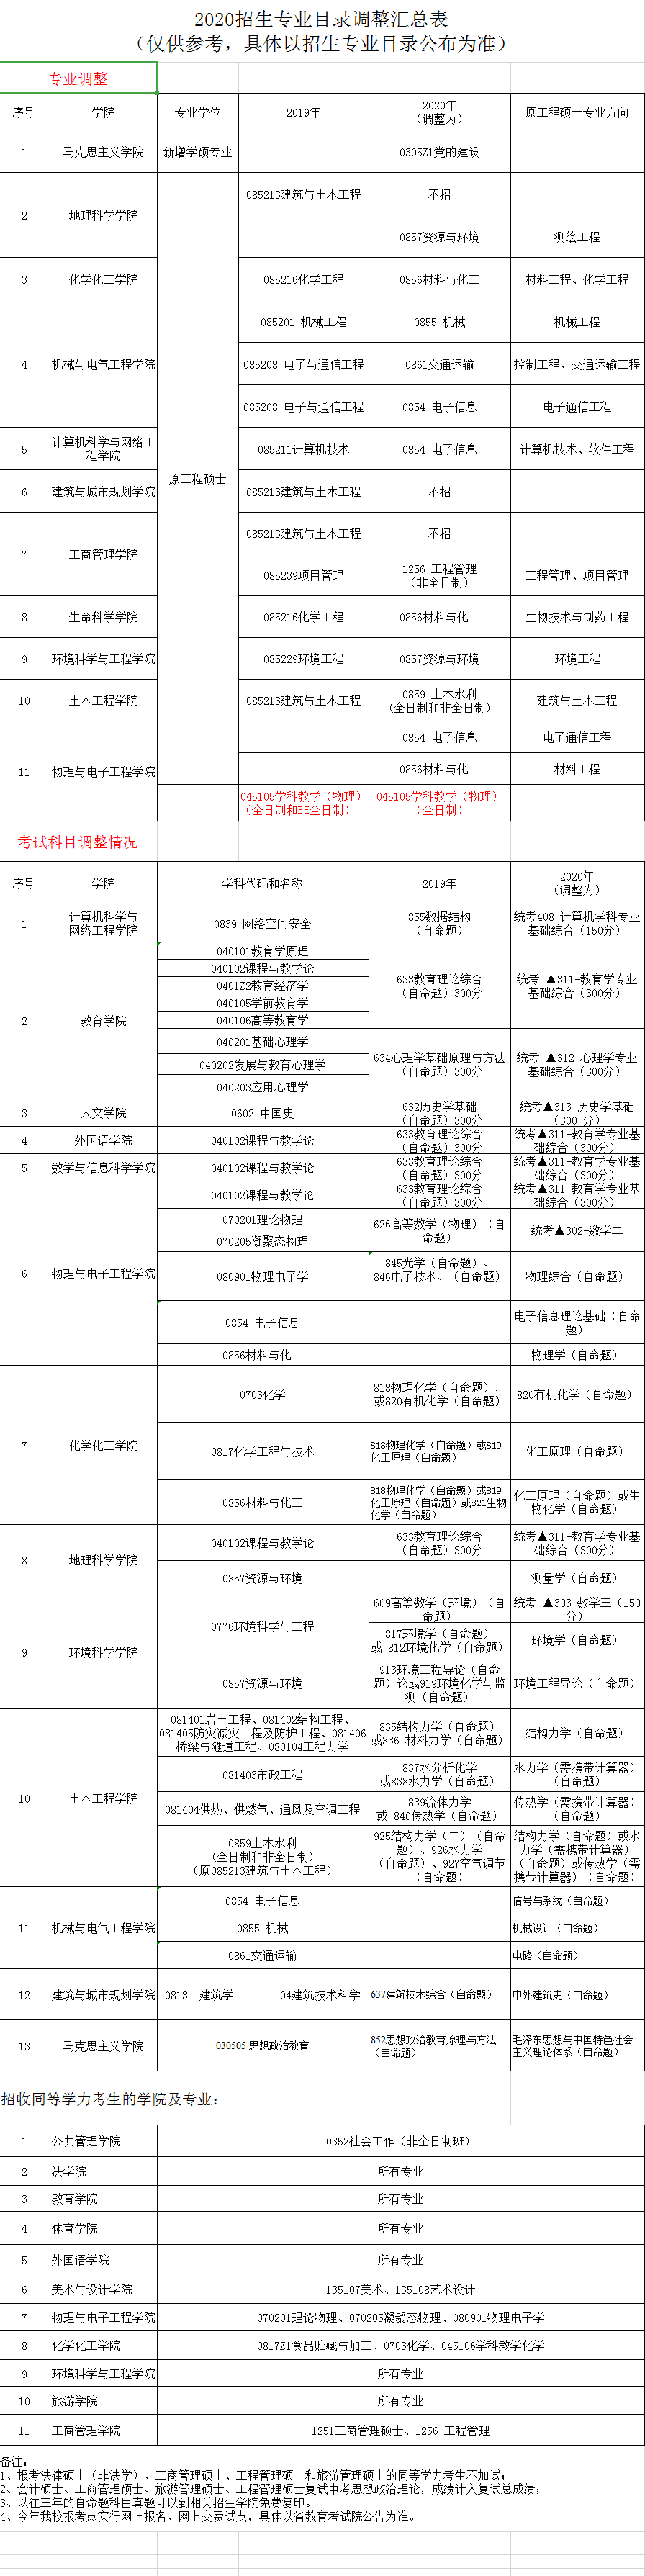 广州大学2020招生专业目录调整汇总表